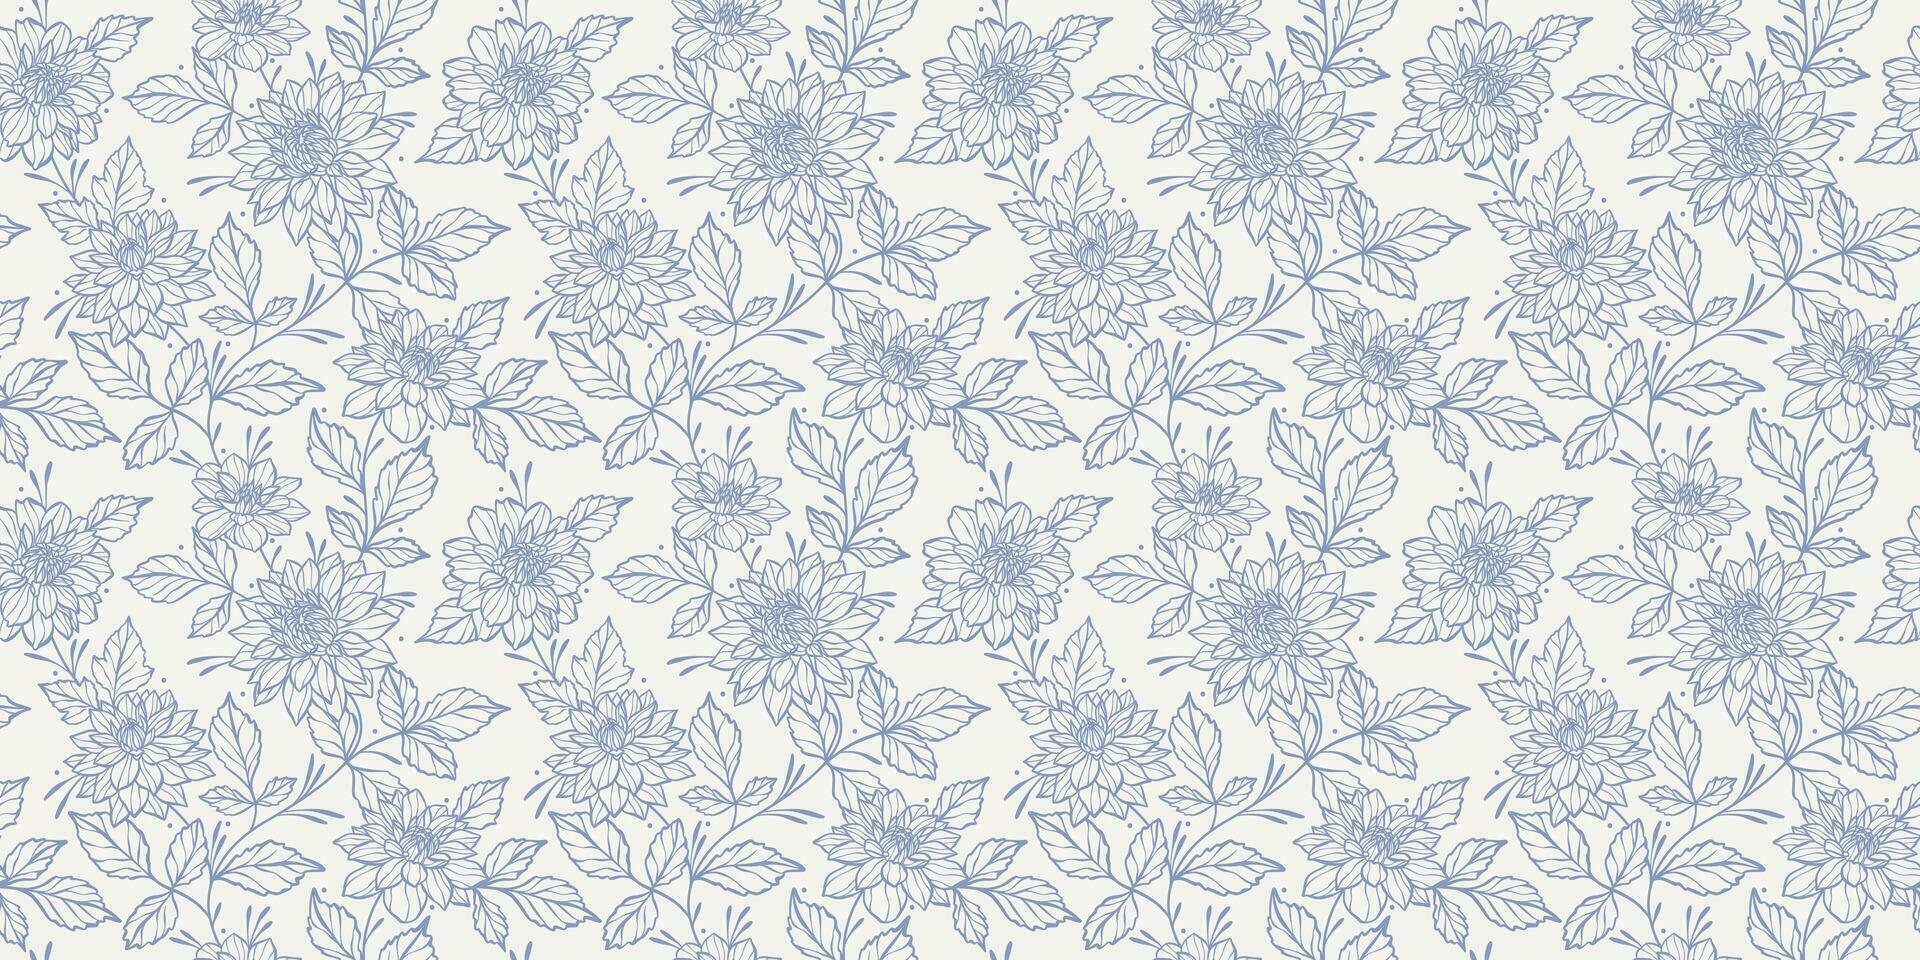 Jahrgang Blau und Weiß Blumen- Muster, elegant Vektor Hintergrund, nahtlos wiederholen drucken mit Hand gezeichnet Dahlie Blumen, kontinuierlich Klettern Ranke Hintergrund, zart feminin Design.